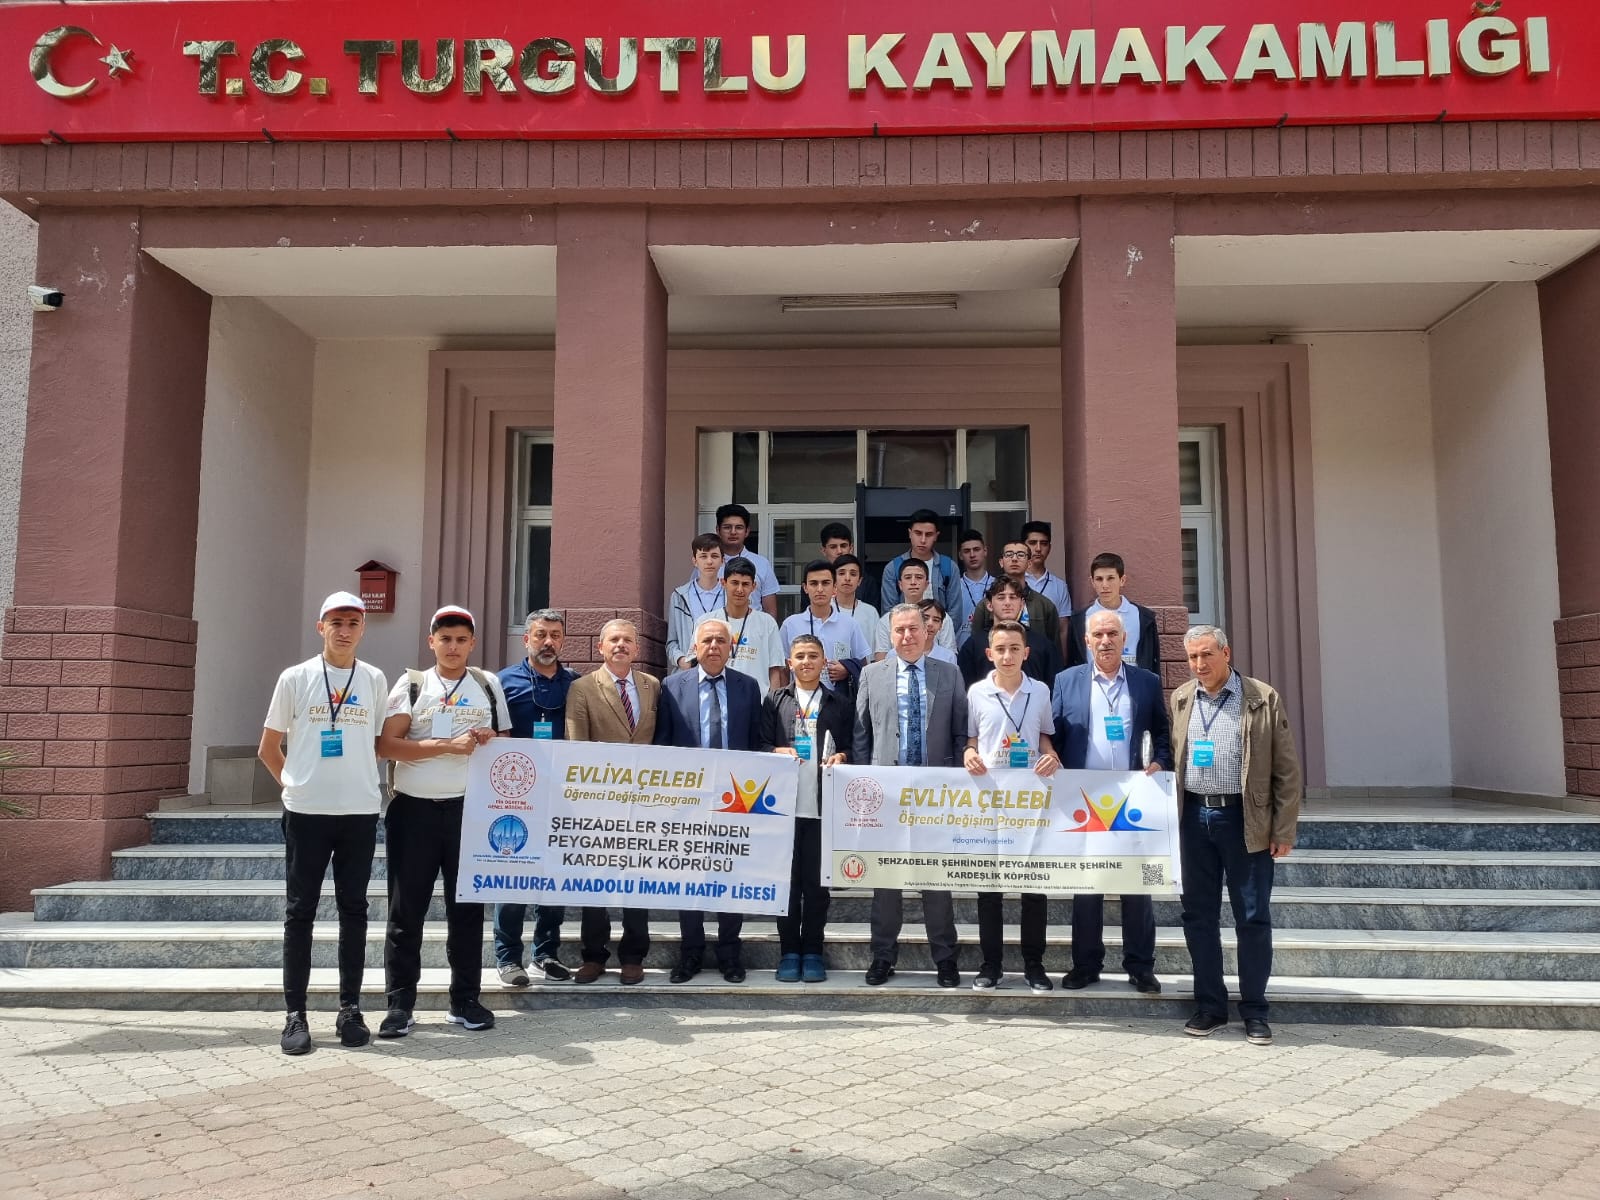 MEB Din Öğretimi Genel Müdürlüğü tarafından gerçekleştirilen Evliya Çelebi Öğrenci Değişim Projesi kapsamında öğrencilerimiz Turgutlu'da ağırlandı